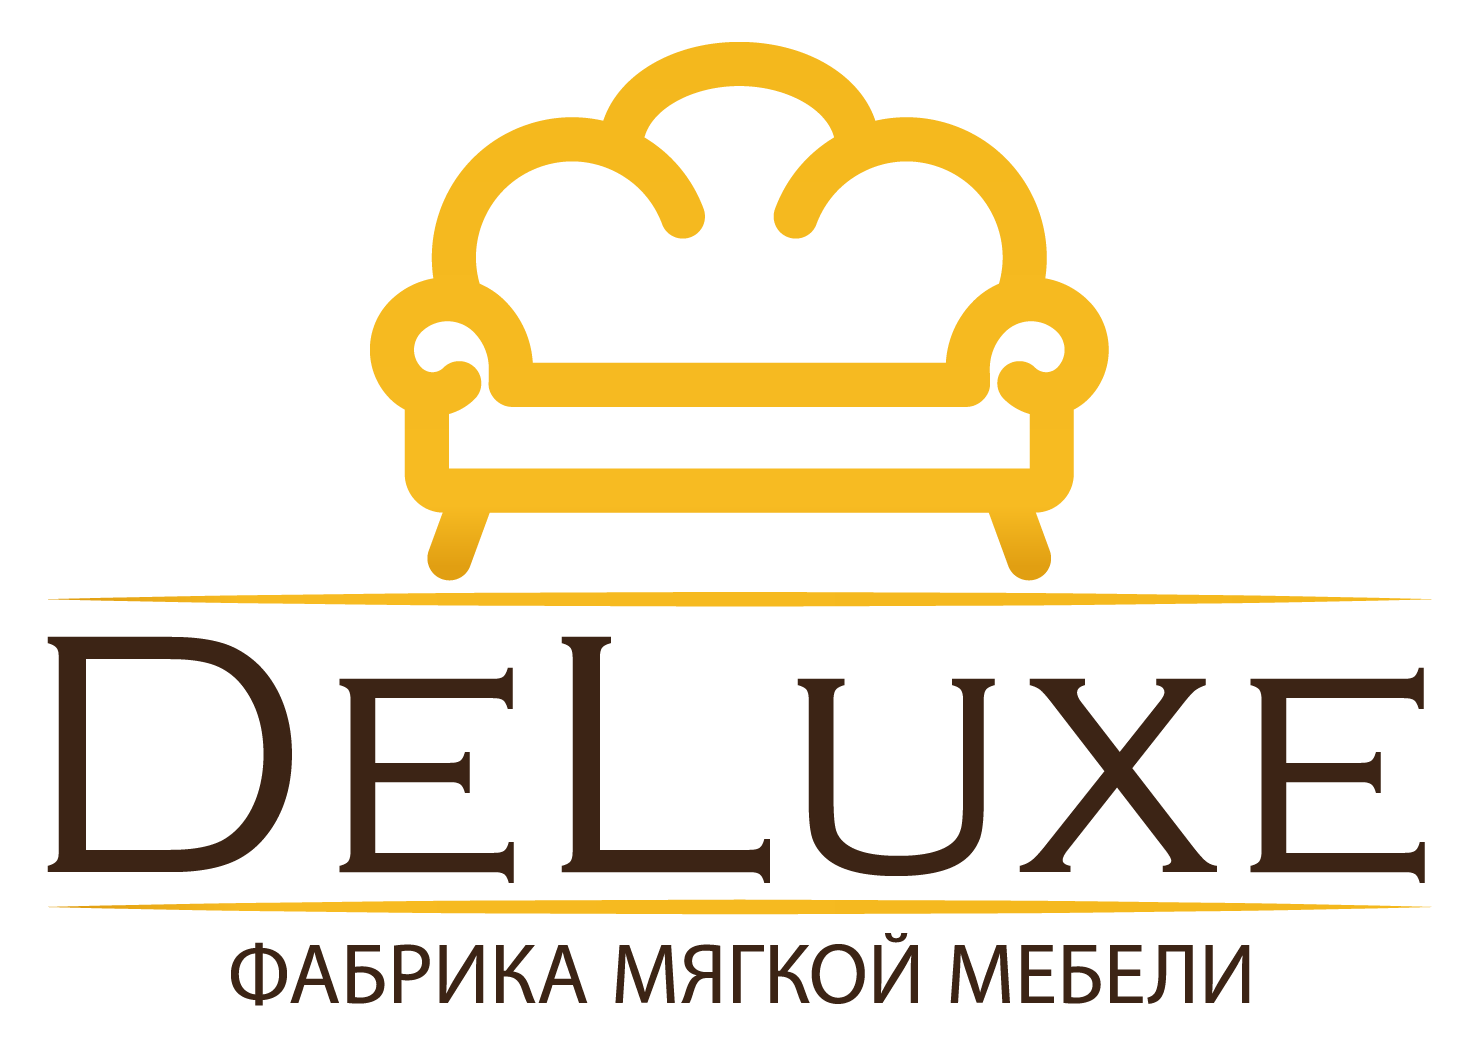 Логотип мебельной фабрики. Фабрика мебели Делюкс. Делюкс для мебели. Фабрика Делюкс Ульяновск.